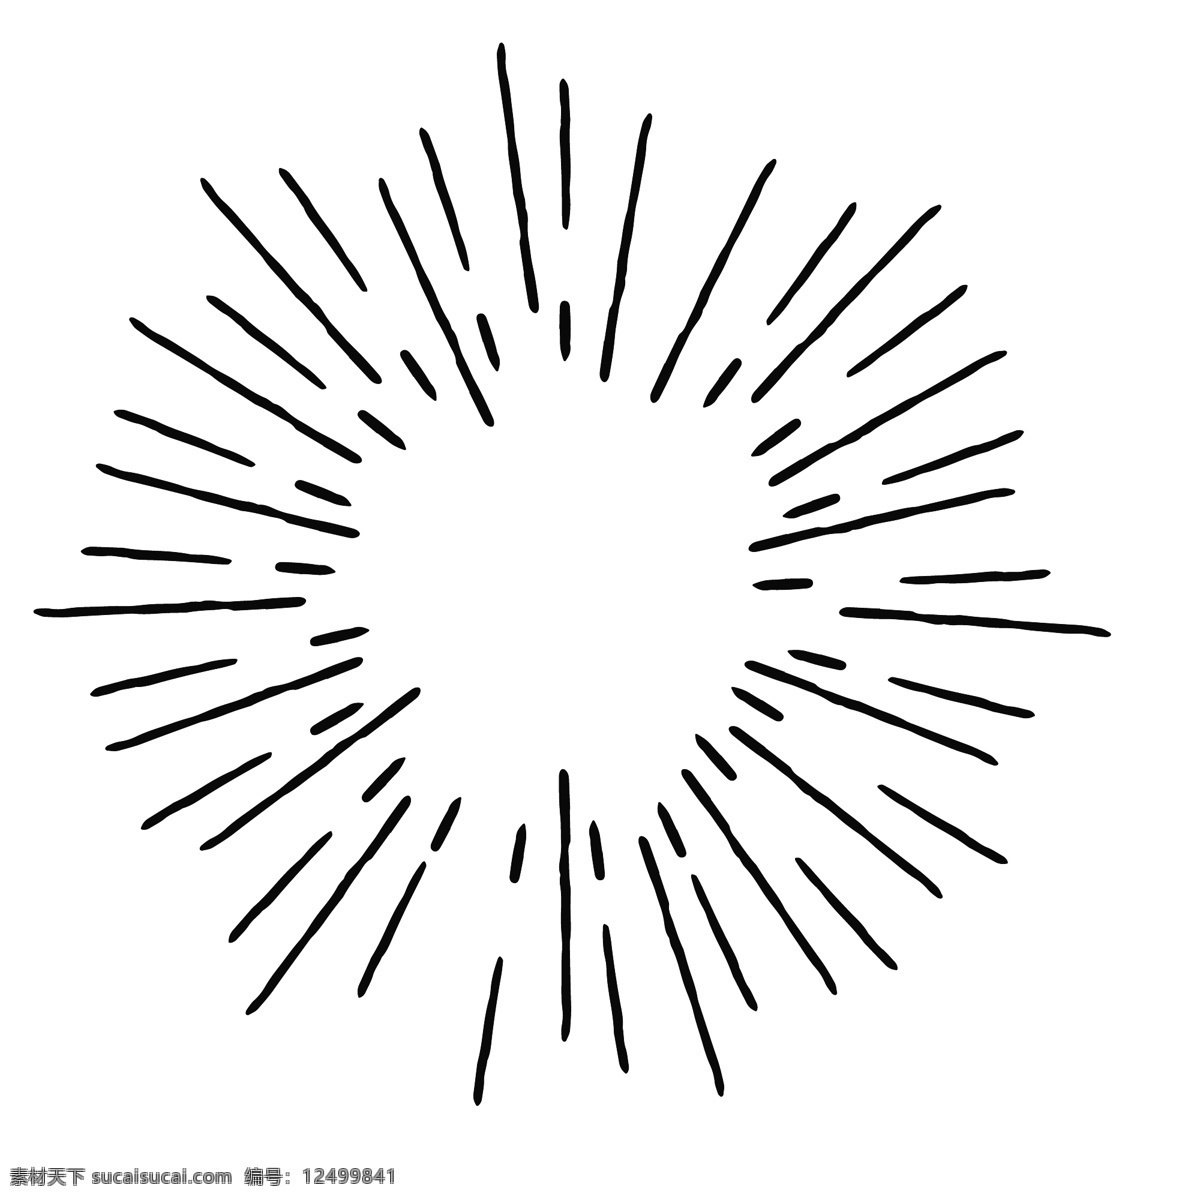 扩散 线条 简笔 图案 爆炸 圆形 环绕 创意 纹理 烟花 装饰图案